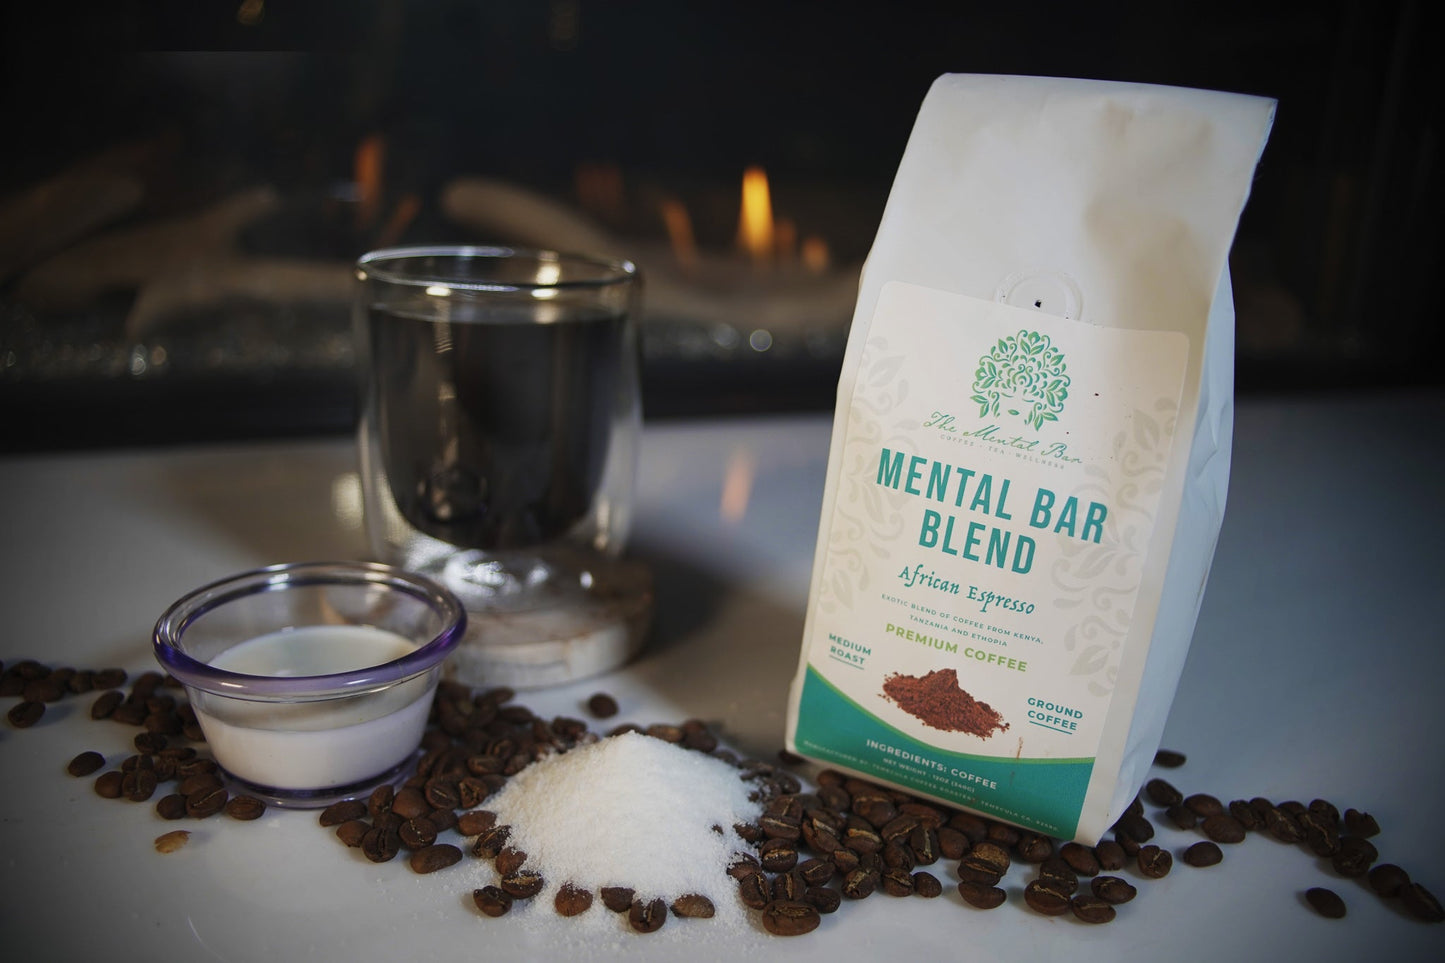 The Mental Bar Blend For Wholesaler (African Espresso)